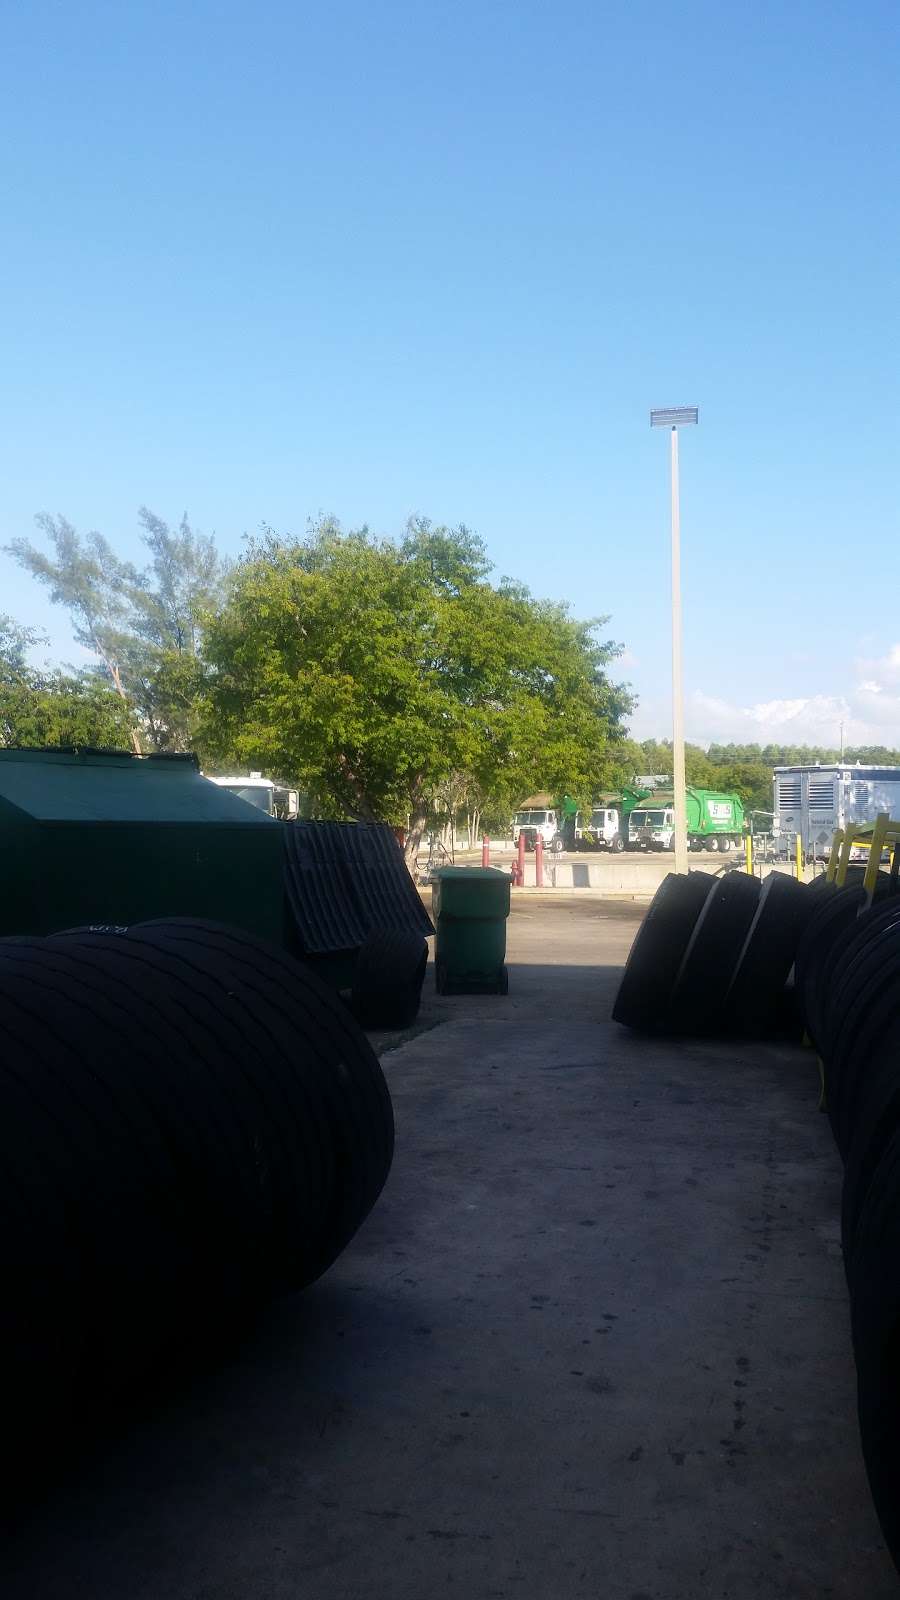 Waste Management - Boynton Beach, FL | 651 Industrial Way, Boynton Beach, FL 33426, USA | Phone: (561) 547-4000